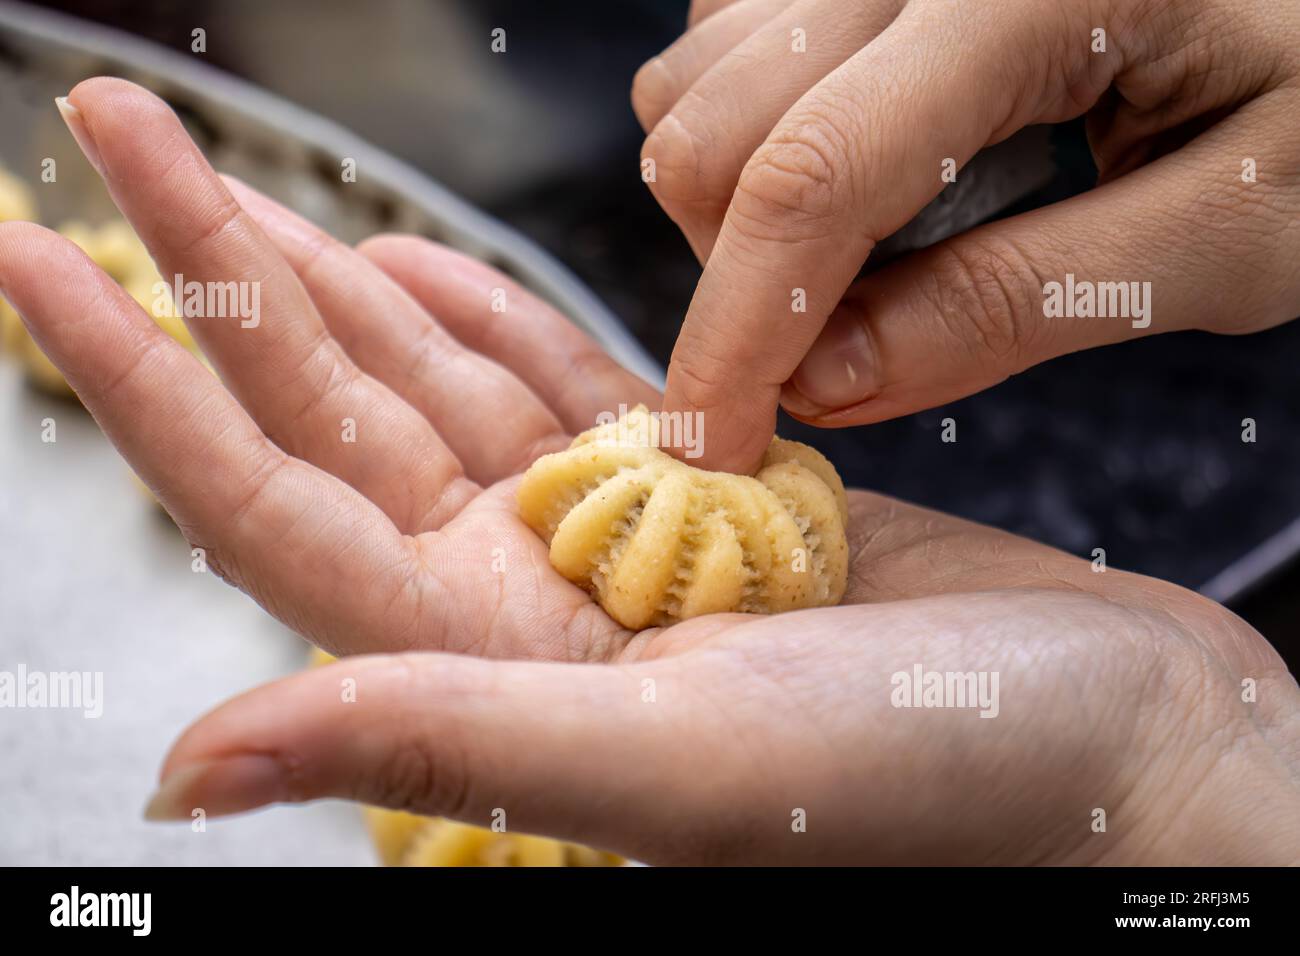 Processus de fabrication de biscuits arabes et de kahk pour l'eid islamique après le ramadan Banque D'Images